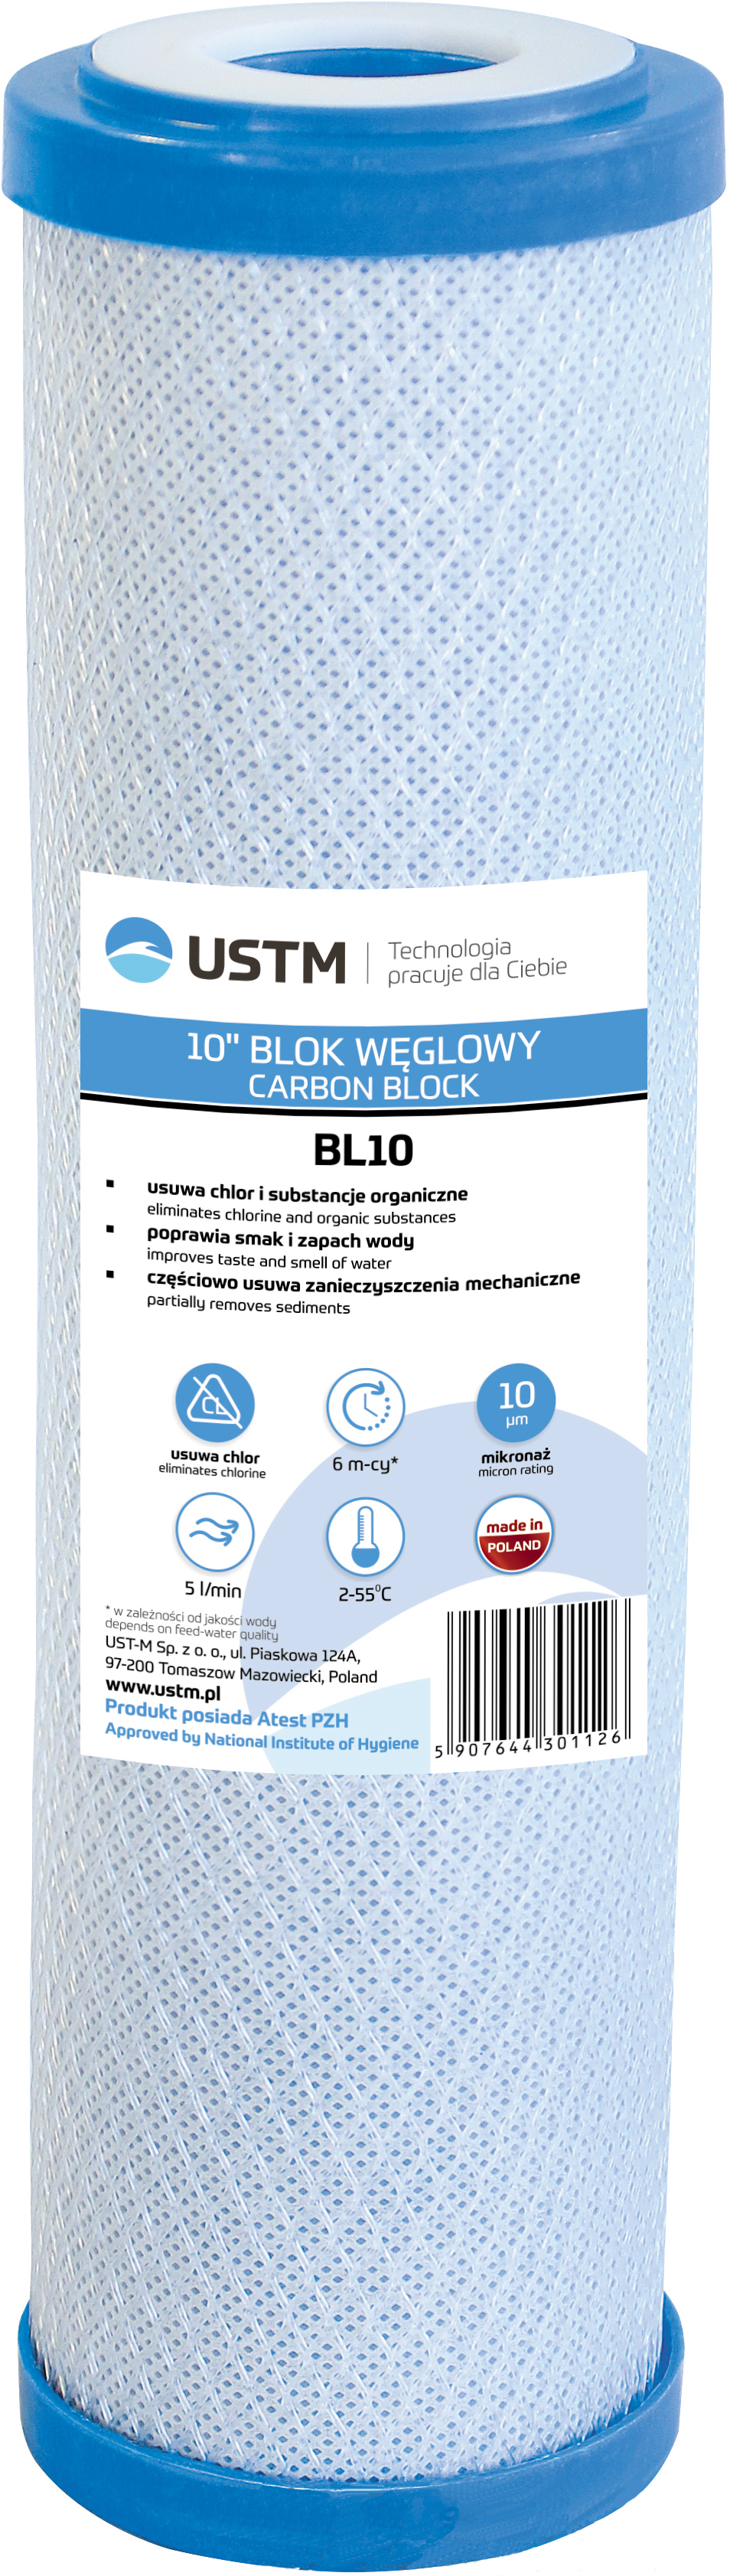 Отзывы картридж для фильтра USTM BL10 в Украине